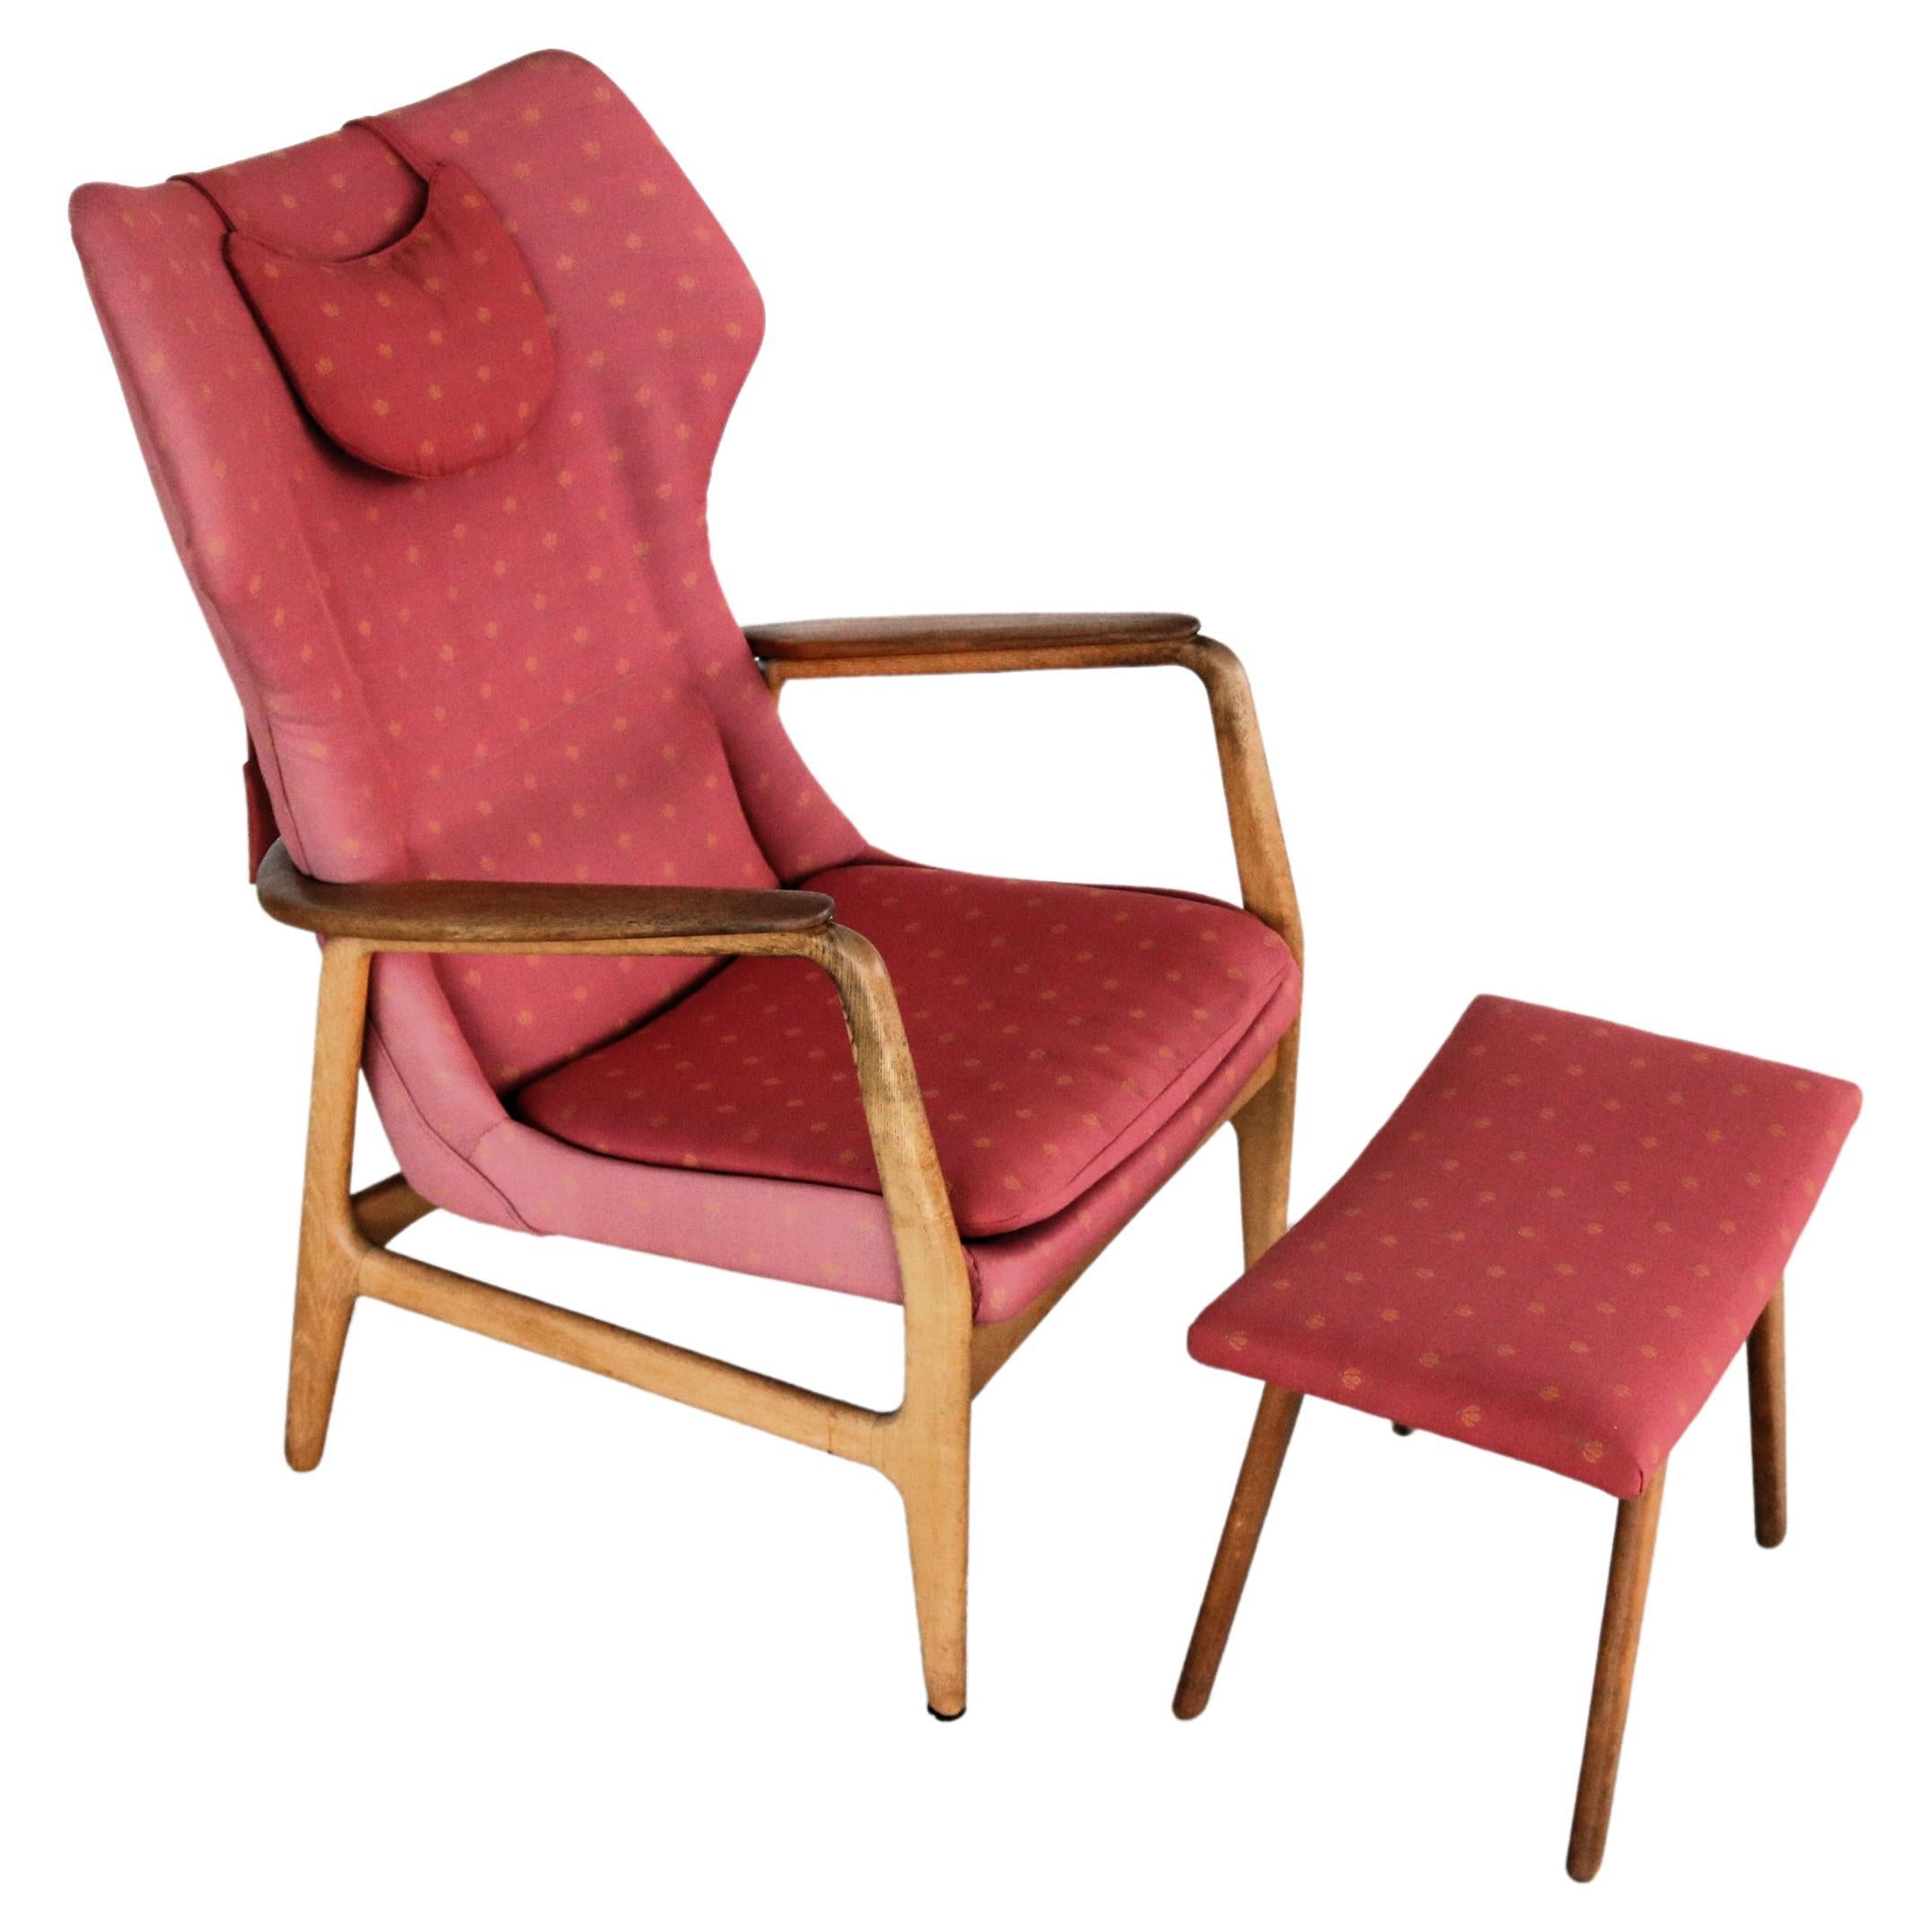 Vintage-Sessel von Bovenkamp  Lehnstuhl  60's 